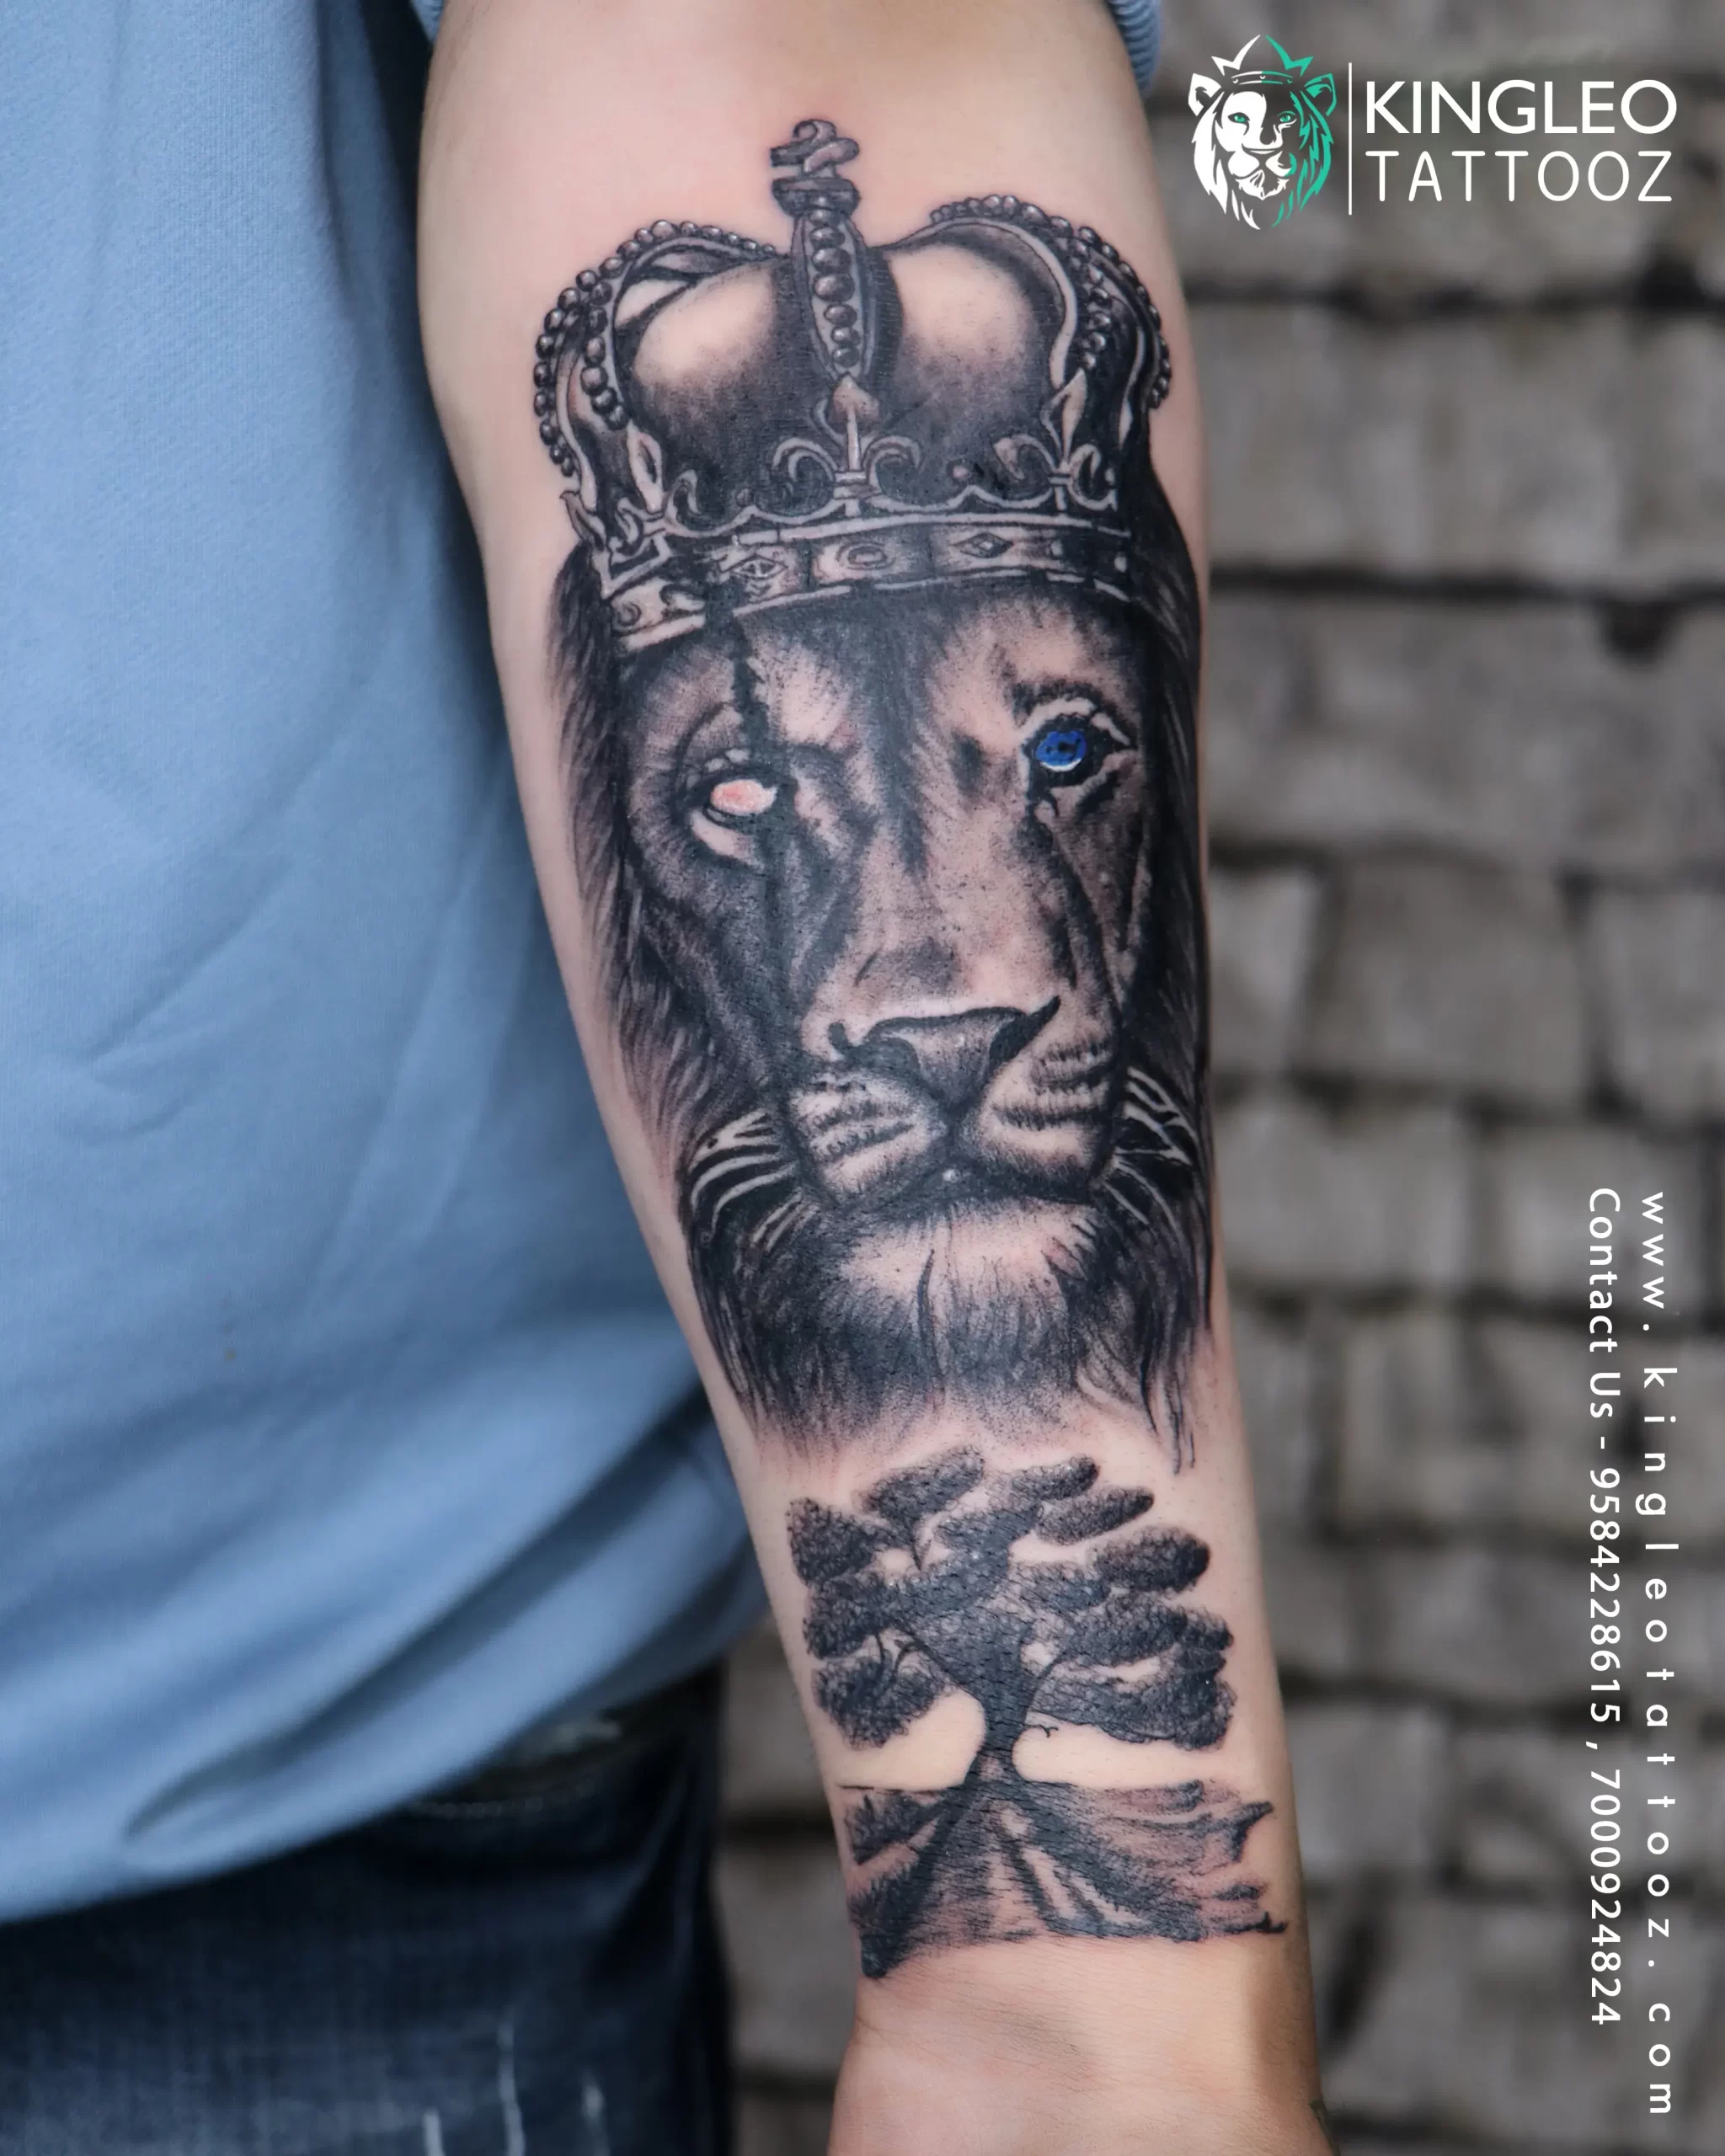 Tattoo uploaded by David Ureel • Dogleg gearbox pattern • Tattoodo